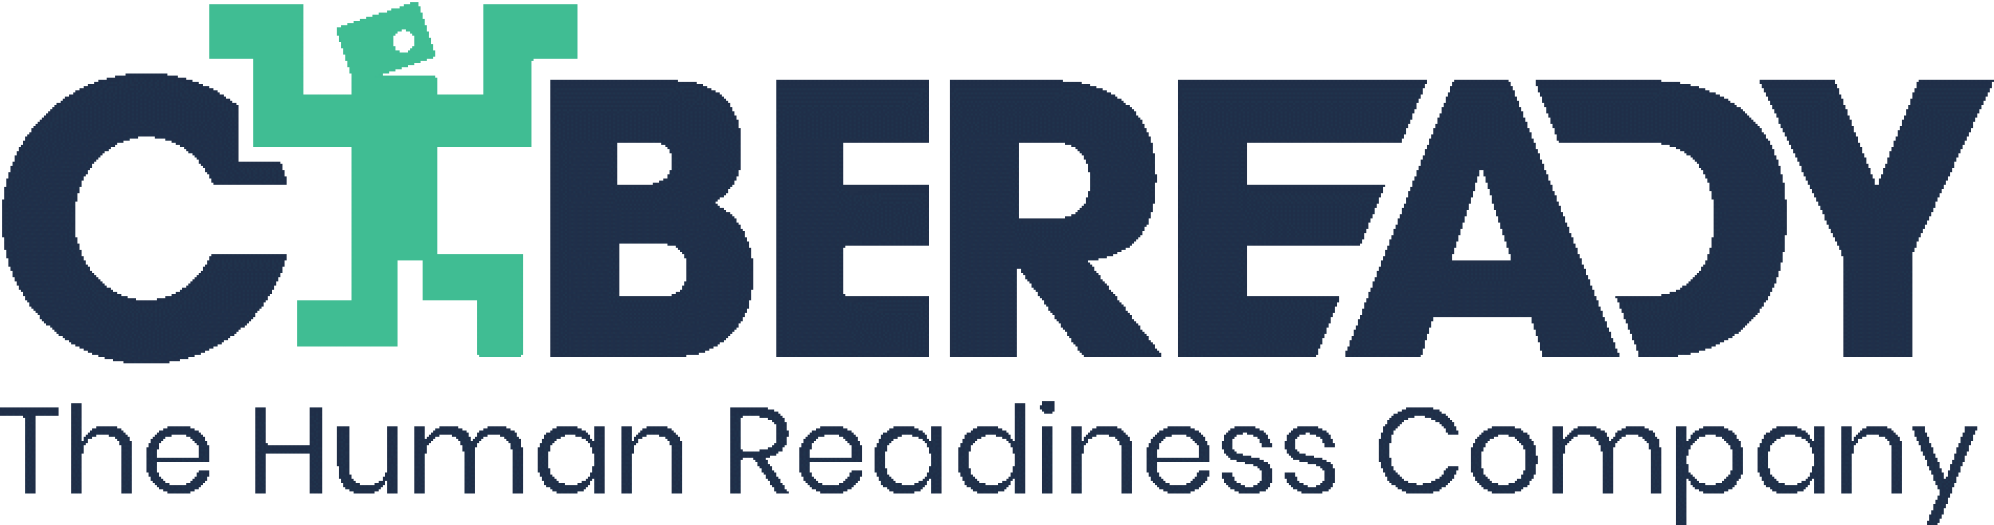 CybeRaedy-Logo